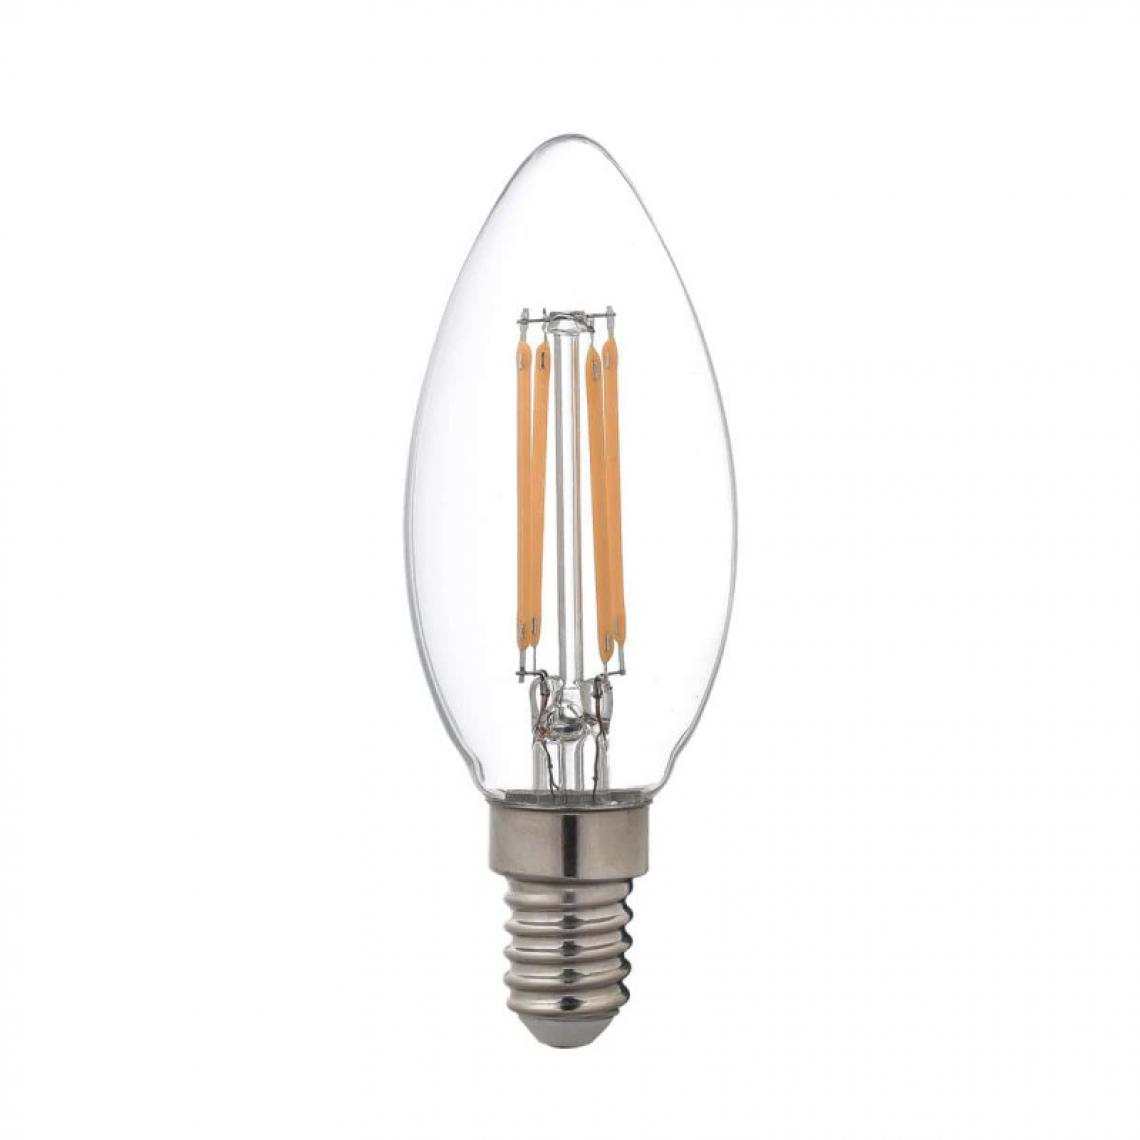 Xxcell - Ampoule LED Filament XXCELL Flamme clair - E14 équivalent 40W - Ampoules LED